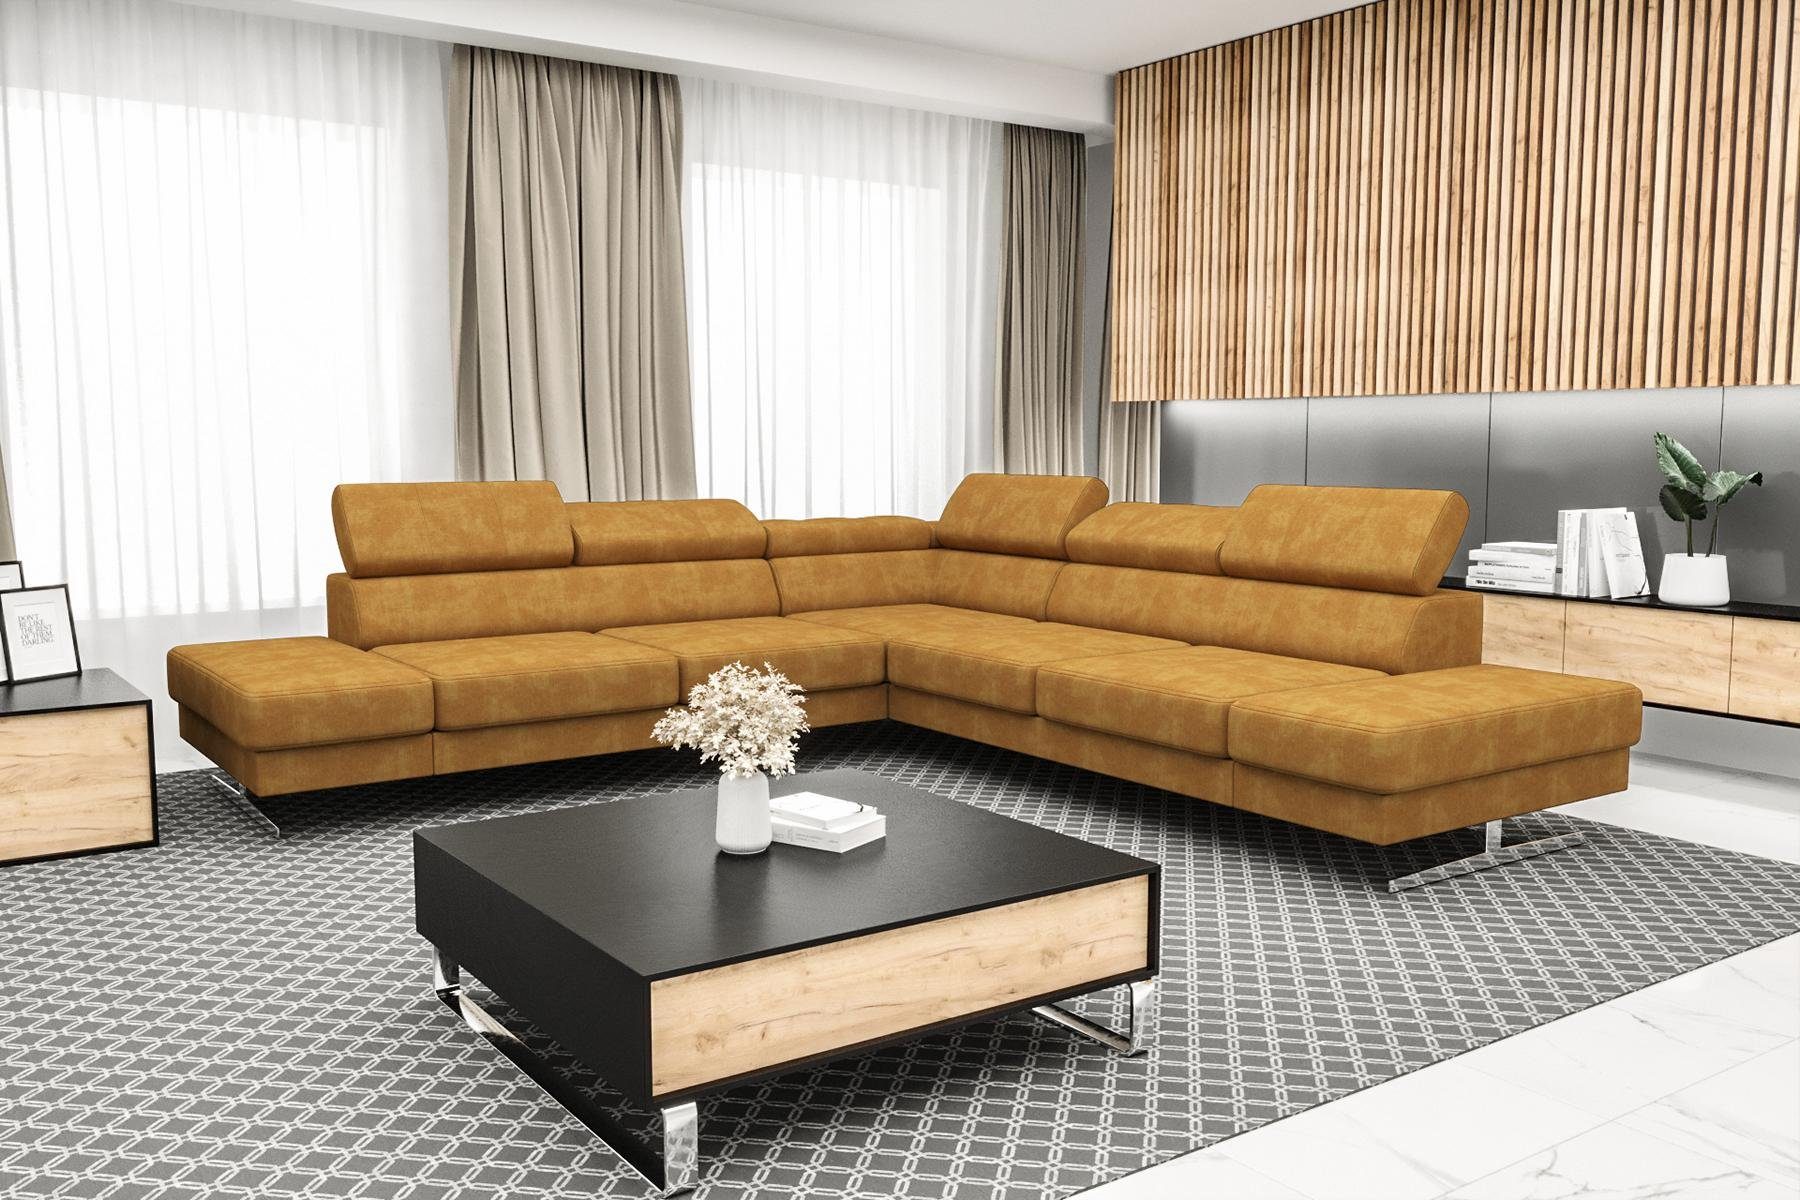 JVmoebel Ecksofa Designer Schwarzes L-Form Luxus Sofa Wohnzimmer Couch Textil, Made in Europe Orange